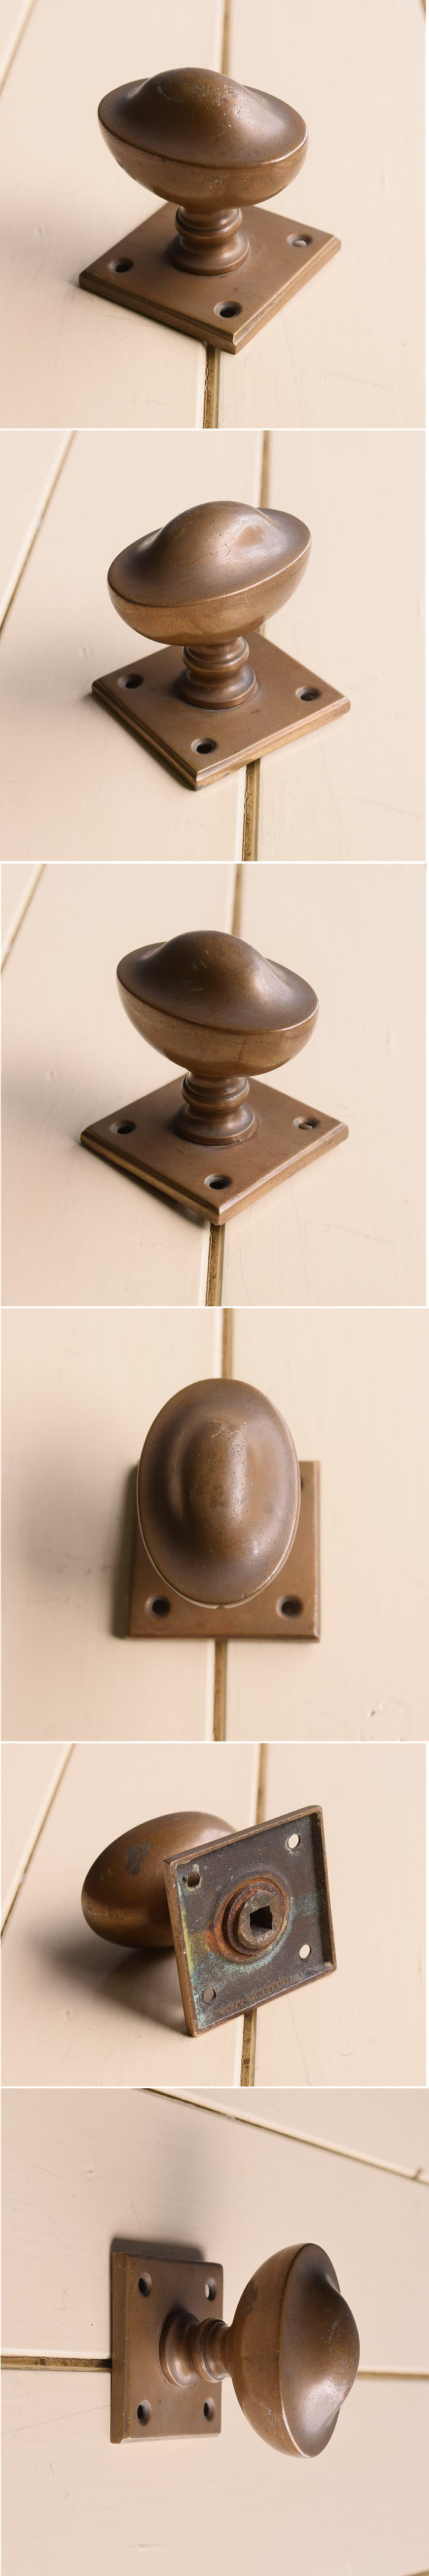 イギリス アンティーク 真鍮製 ドアノブ 建具金物 11156